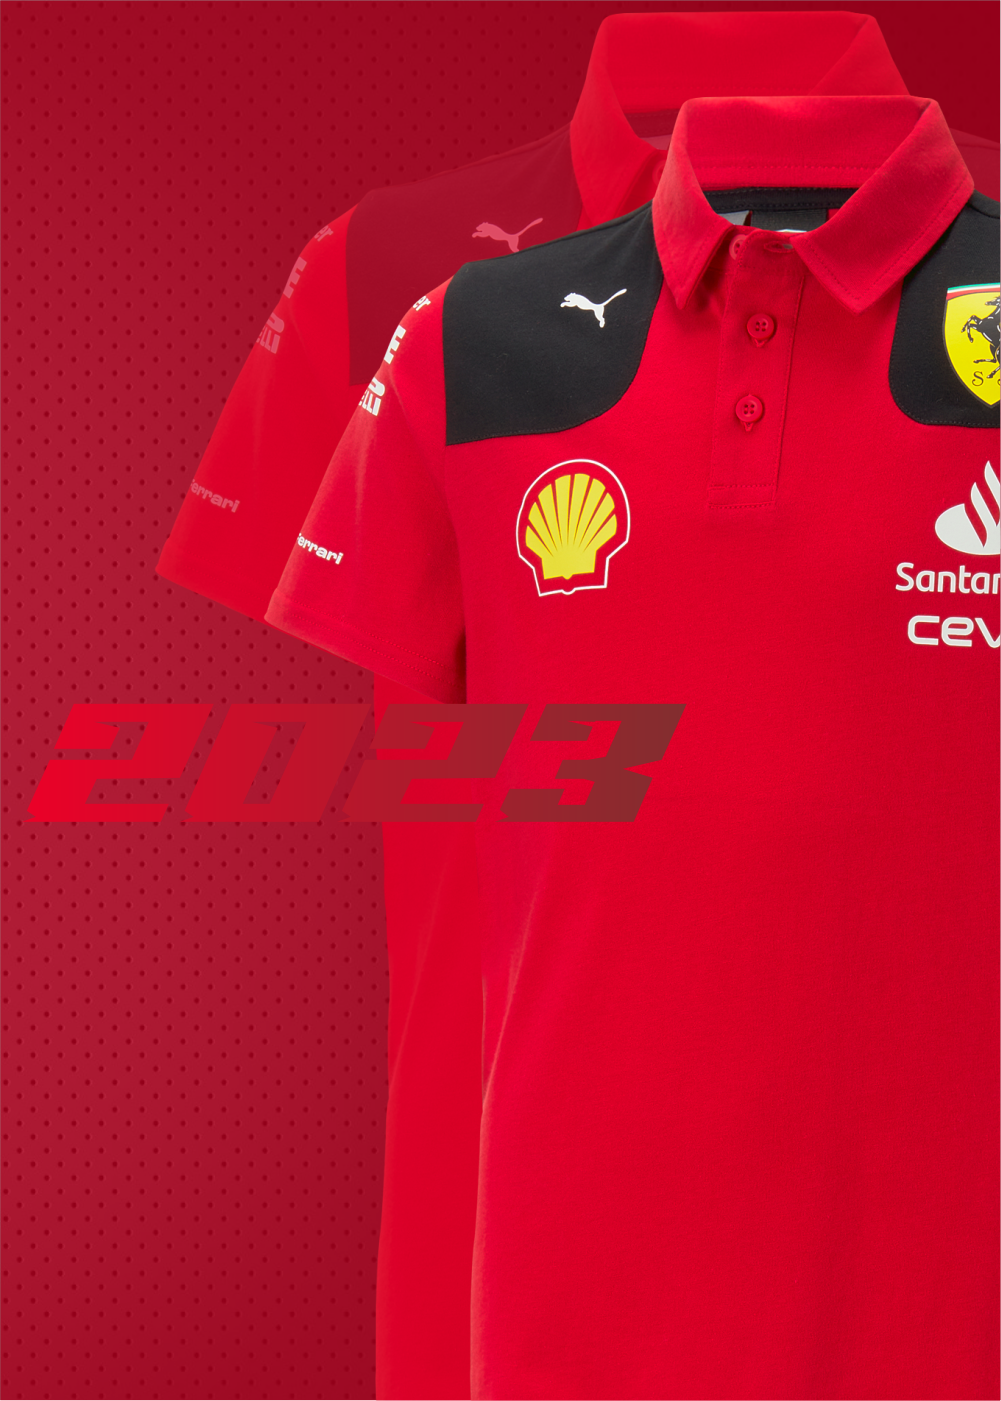 Comprar Gorra Carlos Sainz Ferrari F1. Disponible en rojo, unisex